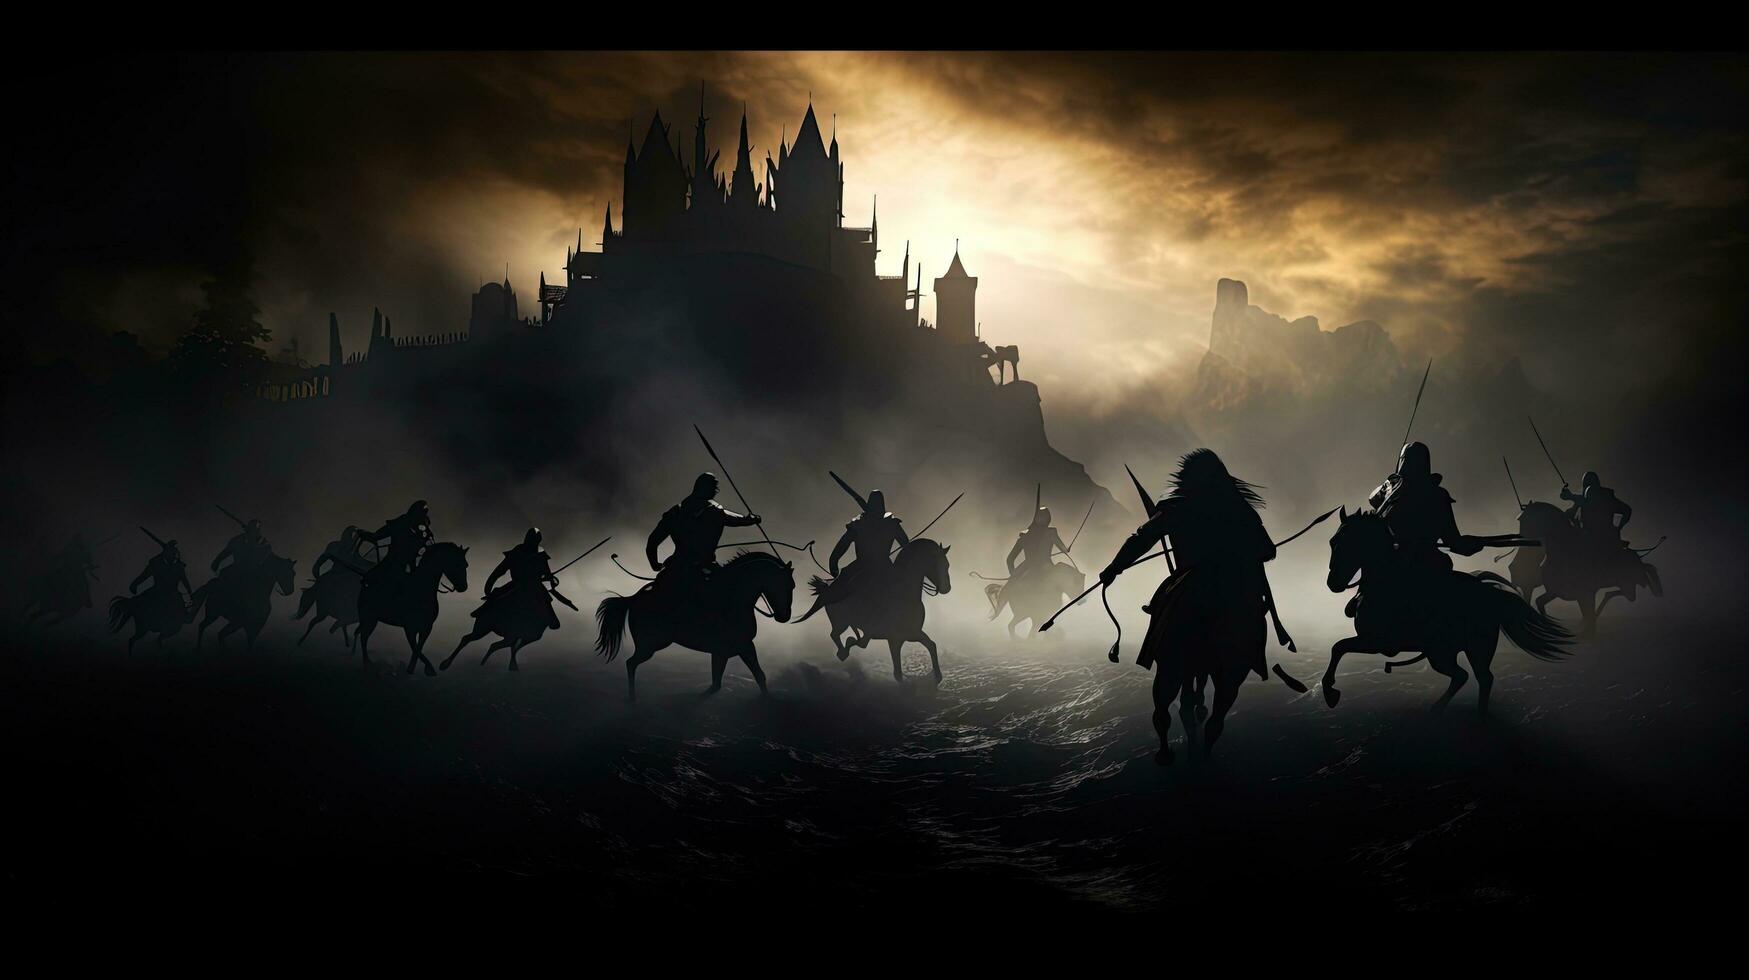 krijgers in middeleeuws strijd tafereel vechten in silhouet tegen een mistig achtergrond met kasteel foto